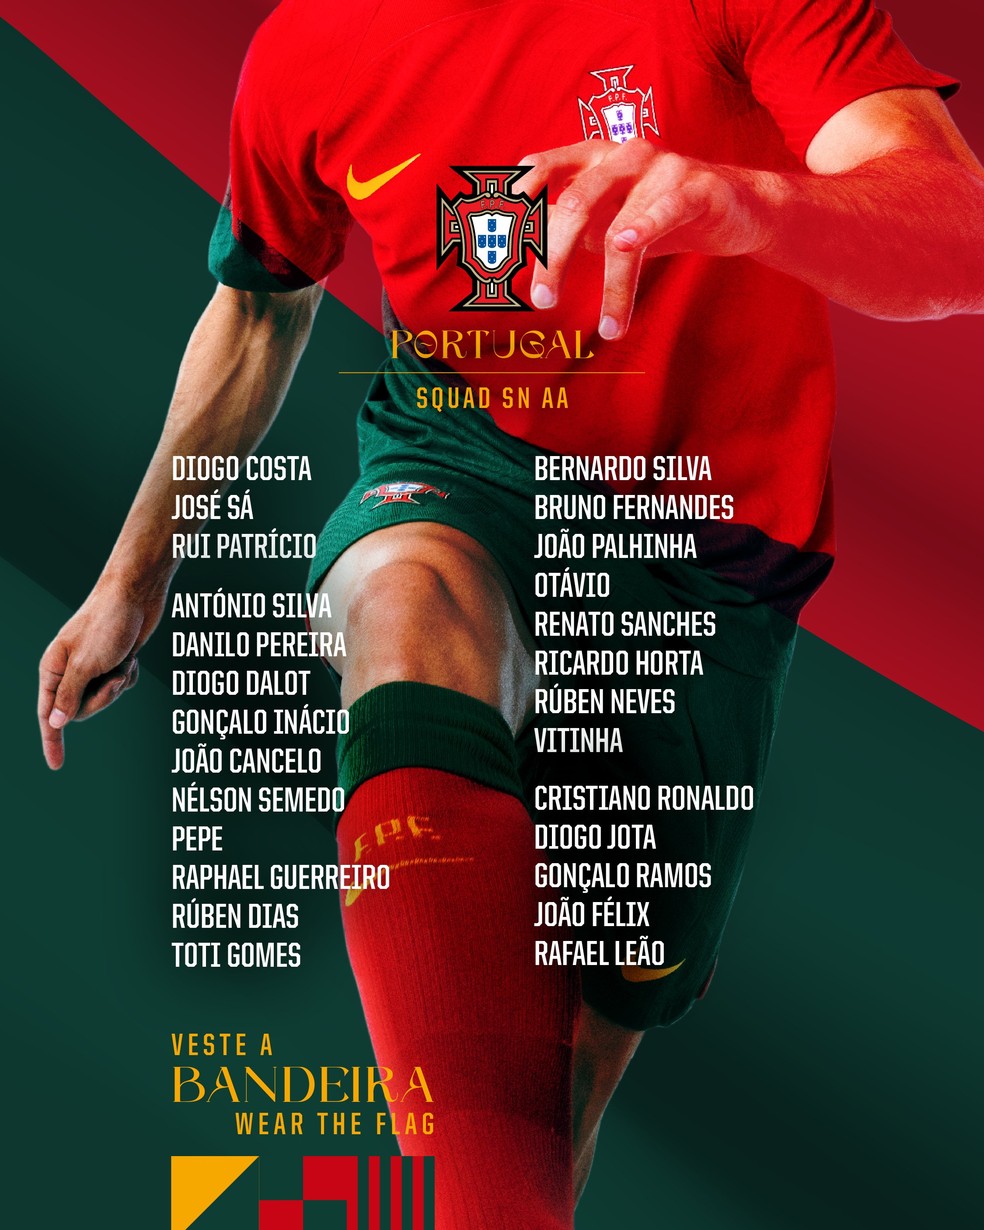 calendário - Euro 2024 - Portugal